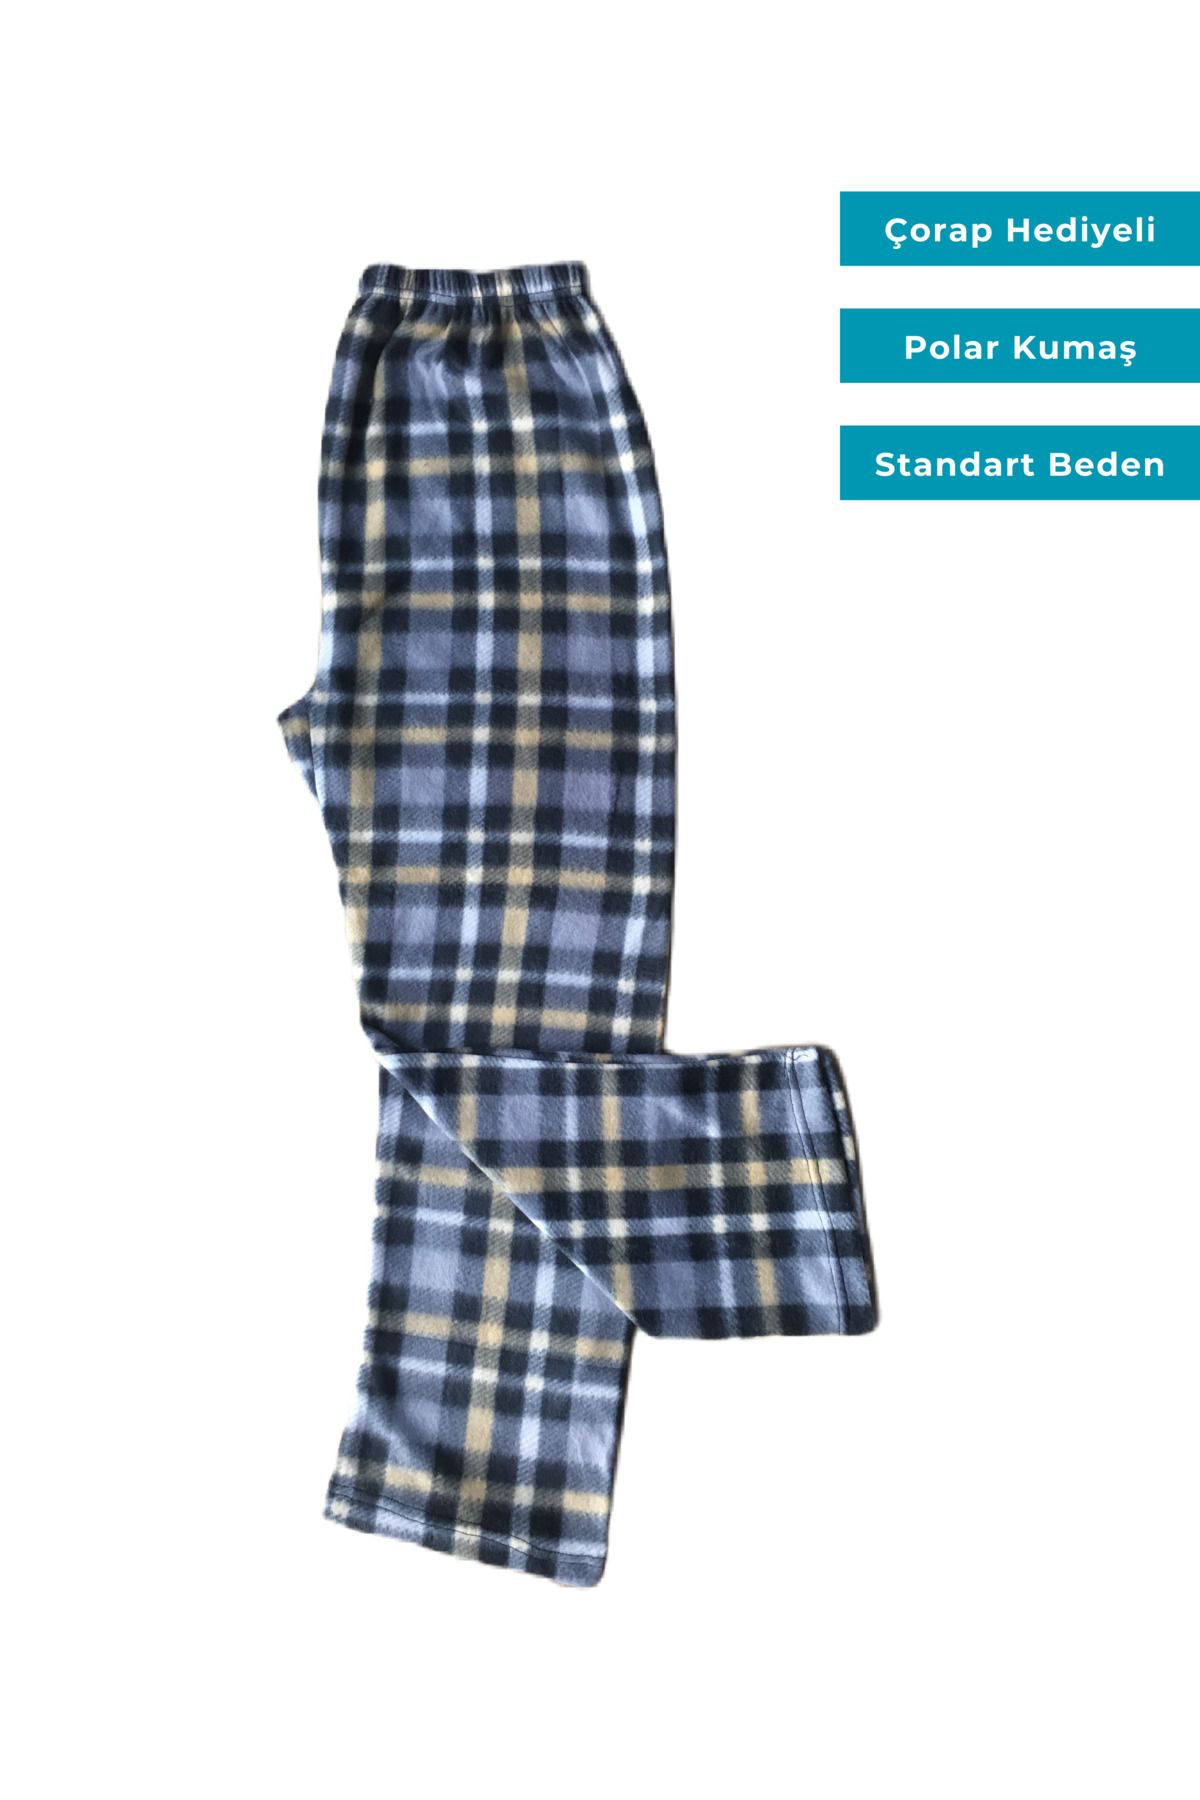 Ece Kadın Ekoseli Kareli Desenli Polar Pijama Alt Standart Battal Beden Çorap Hediyeli